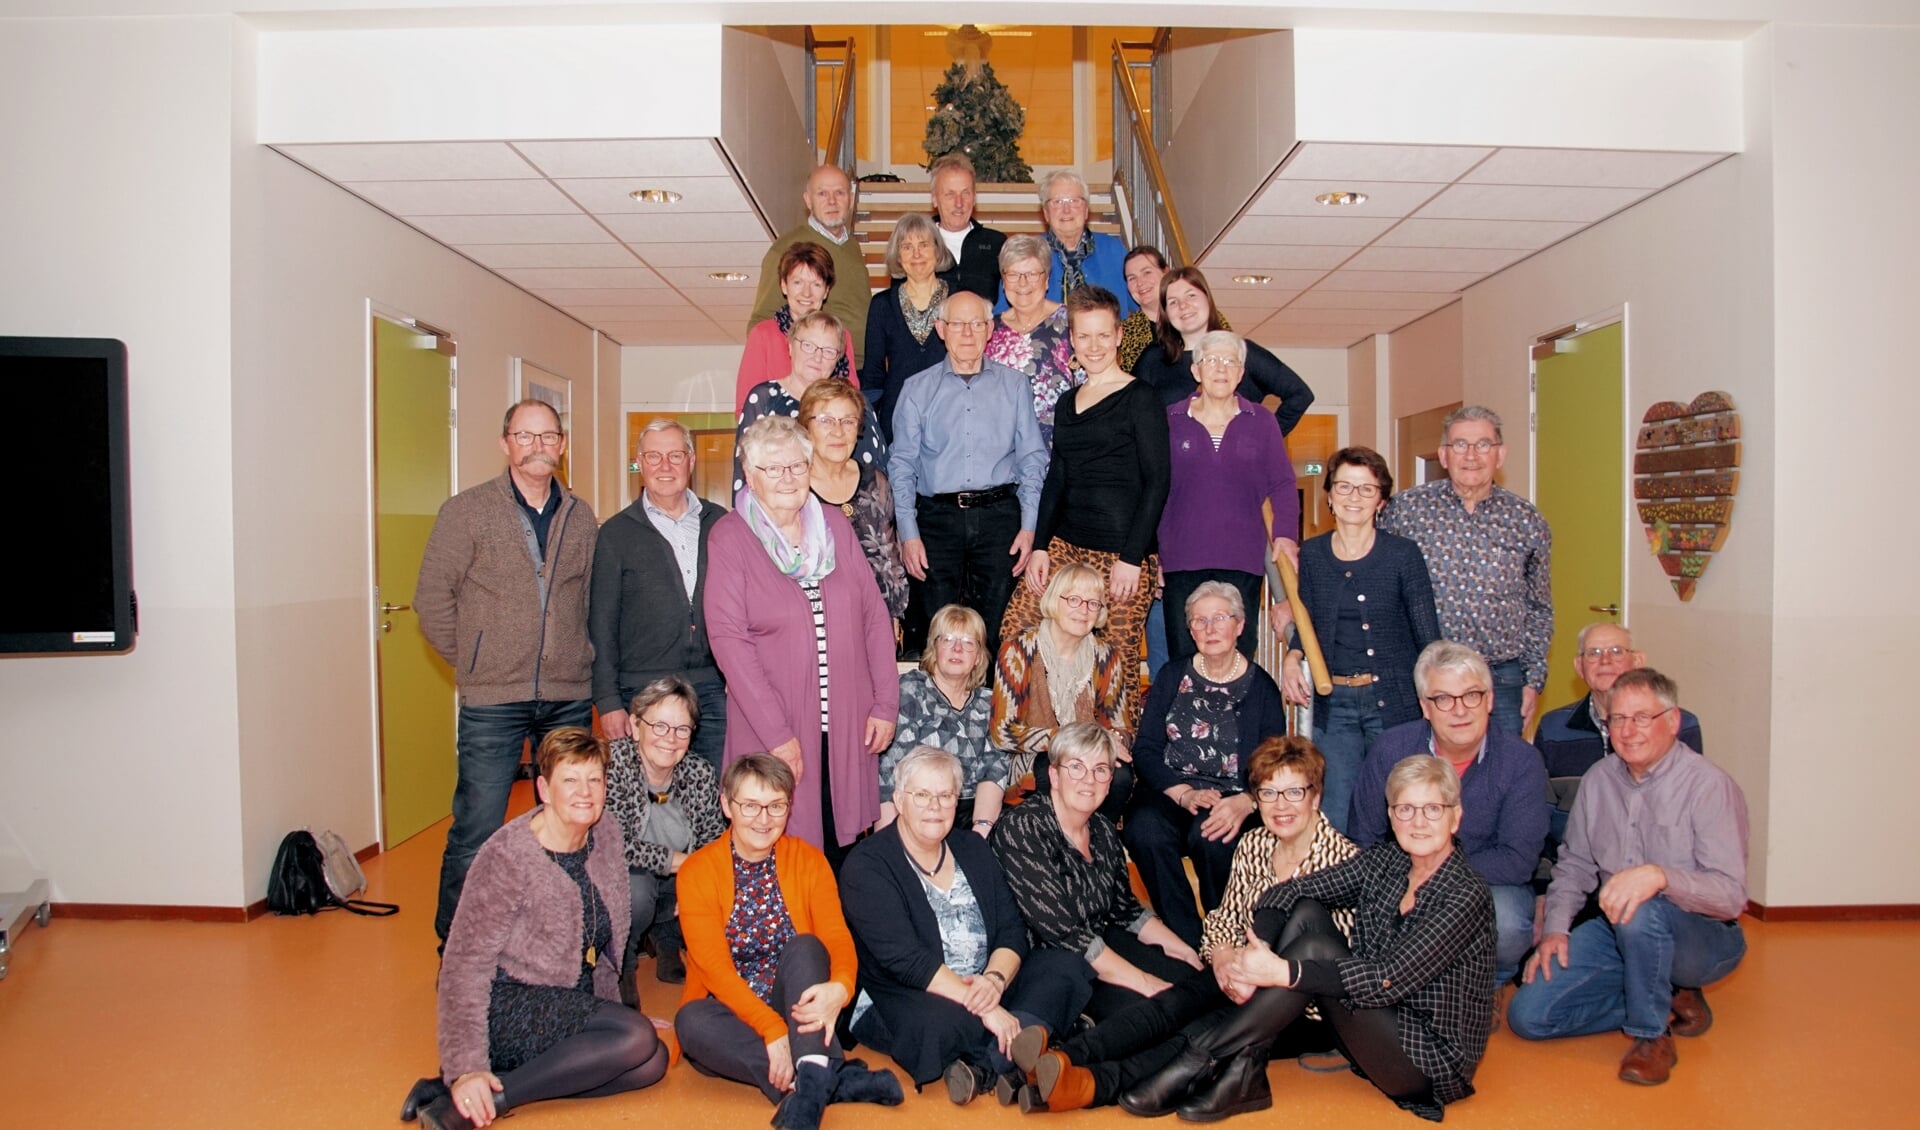 De leden van de cantorij met in hun midden Elske te Lindert, die afscheid nam als dirigent van de cantorij. Foto: Frank Vinkenvleugel